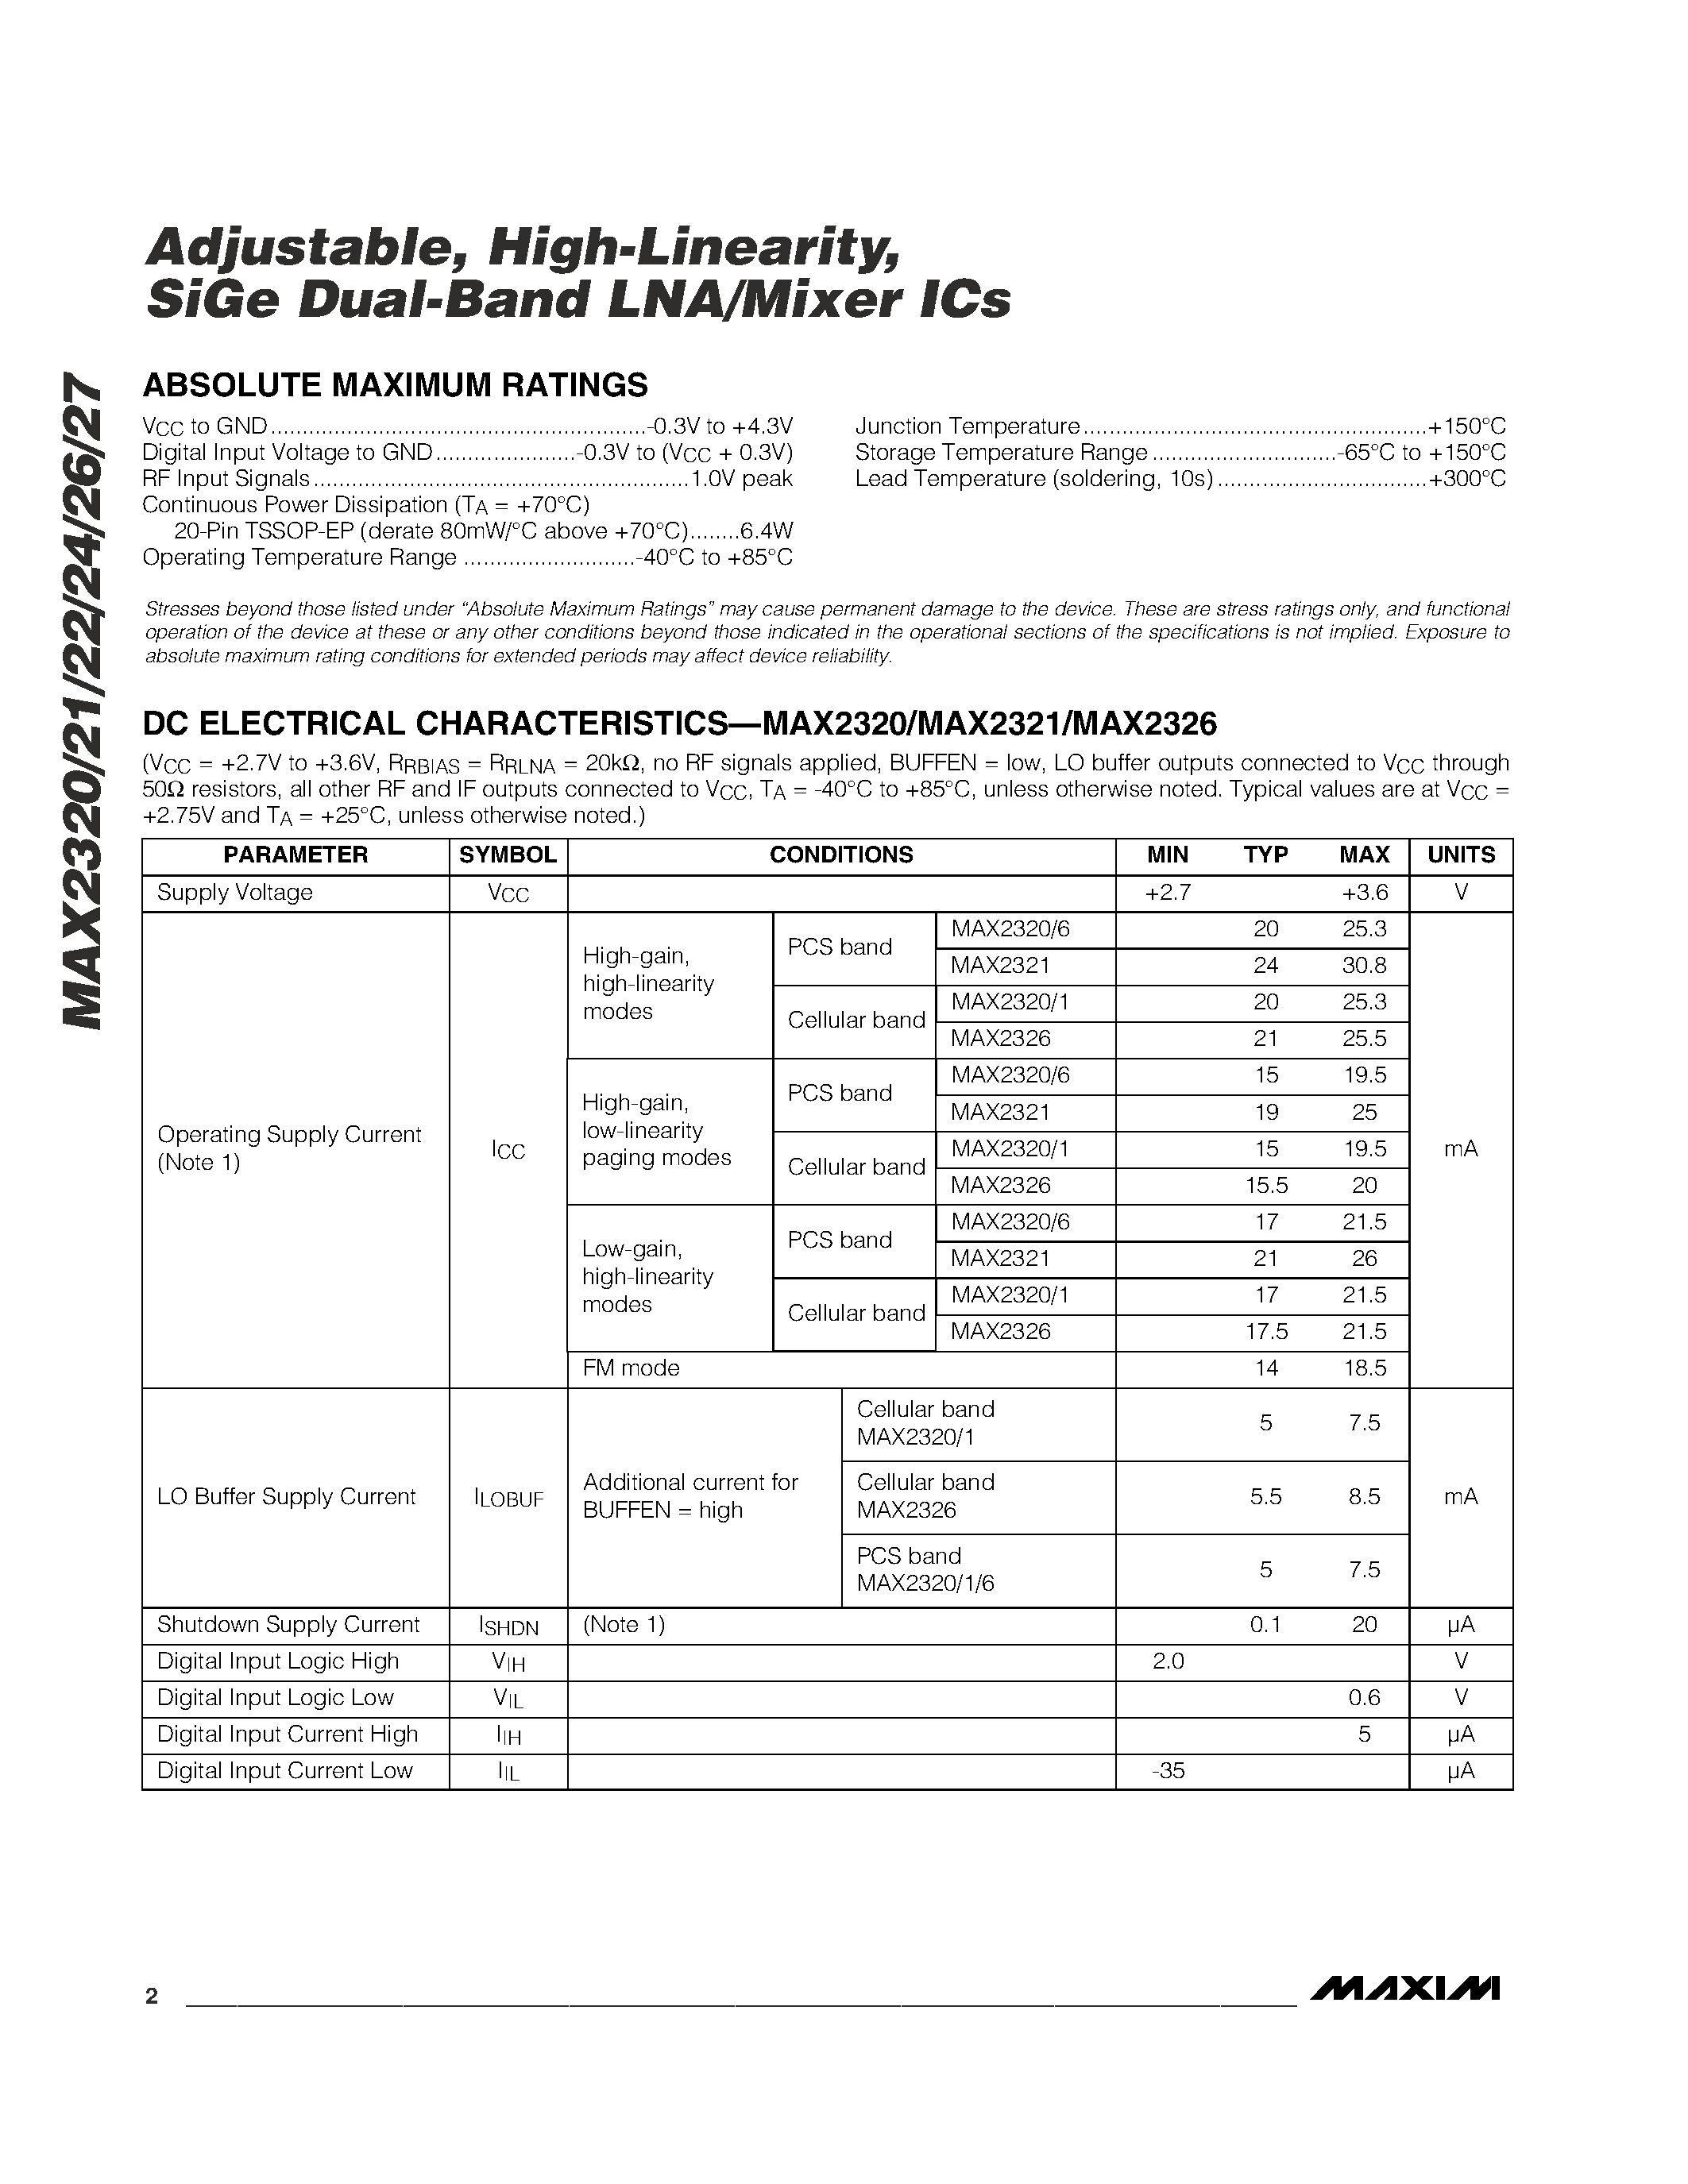 Даташит MAX2321 - Adjustable / High-Linearity / SiGe Dual-Band LNA/Mixer ICs страница 2